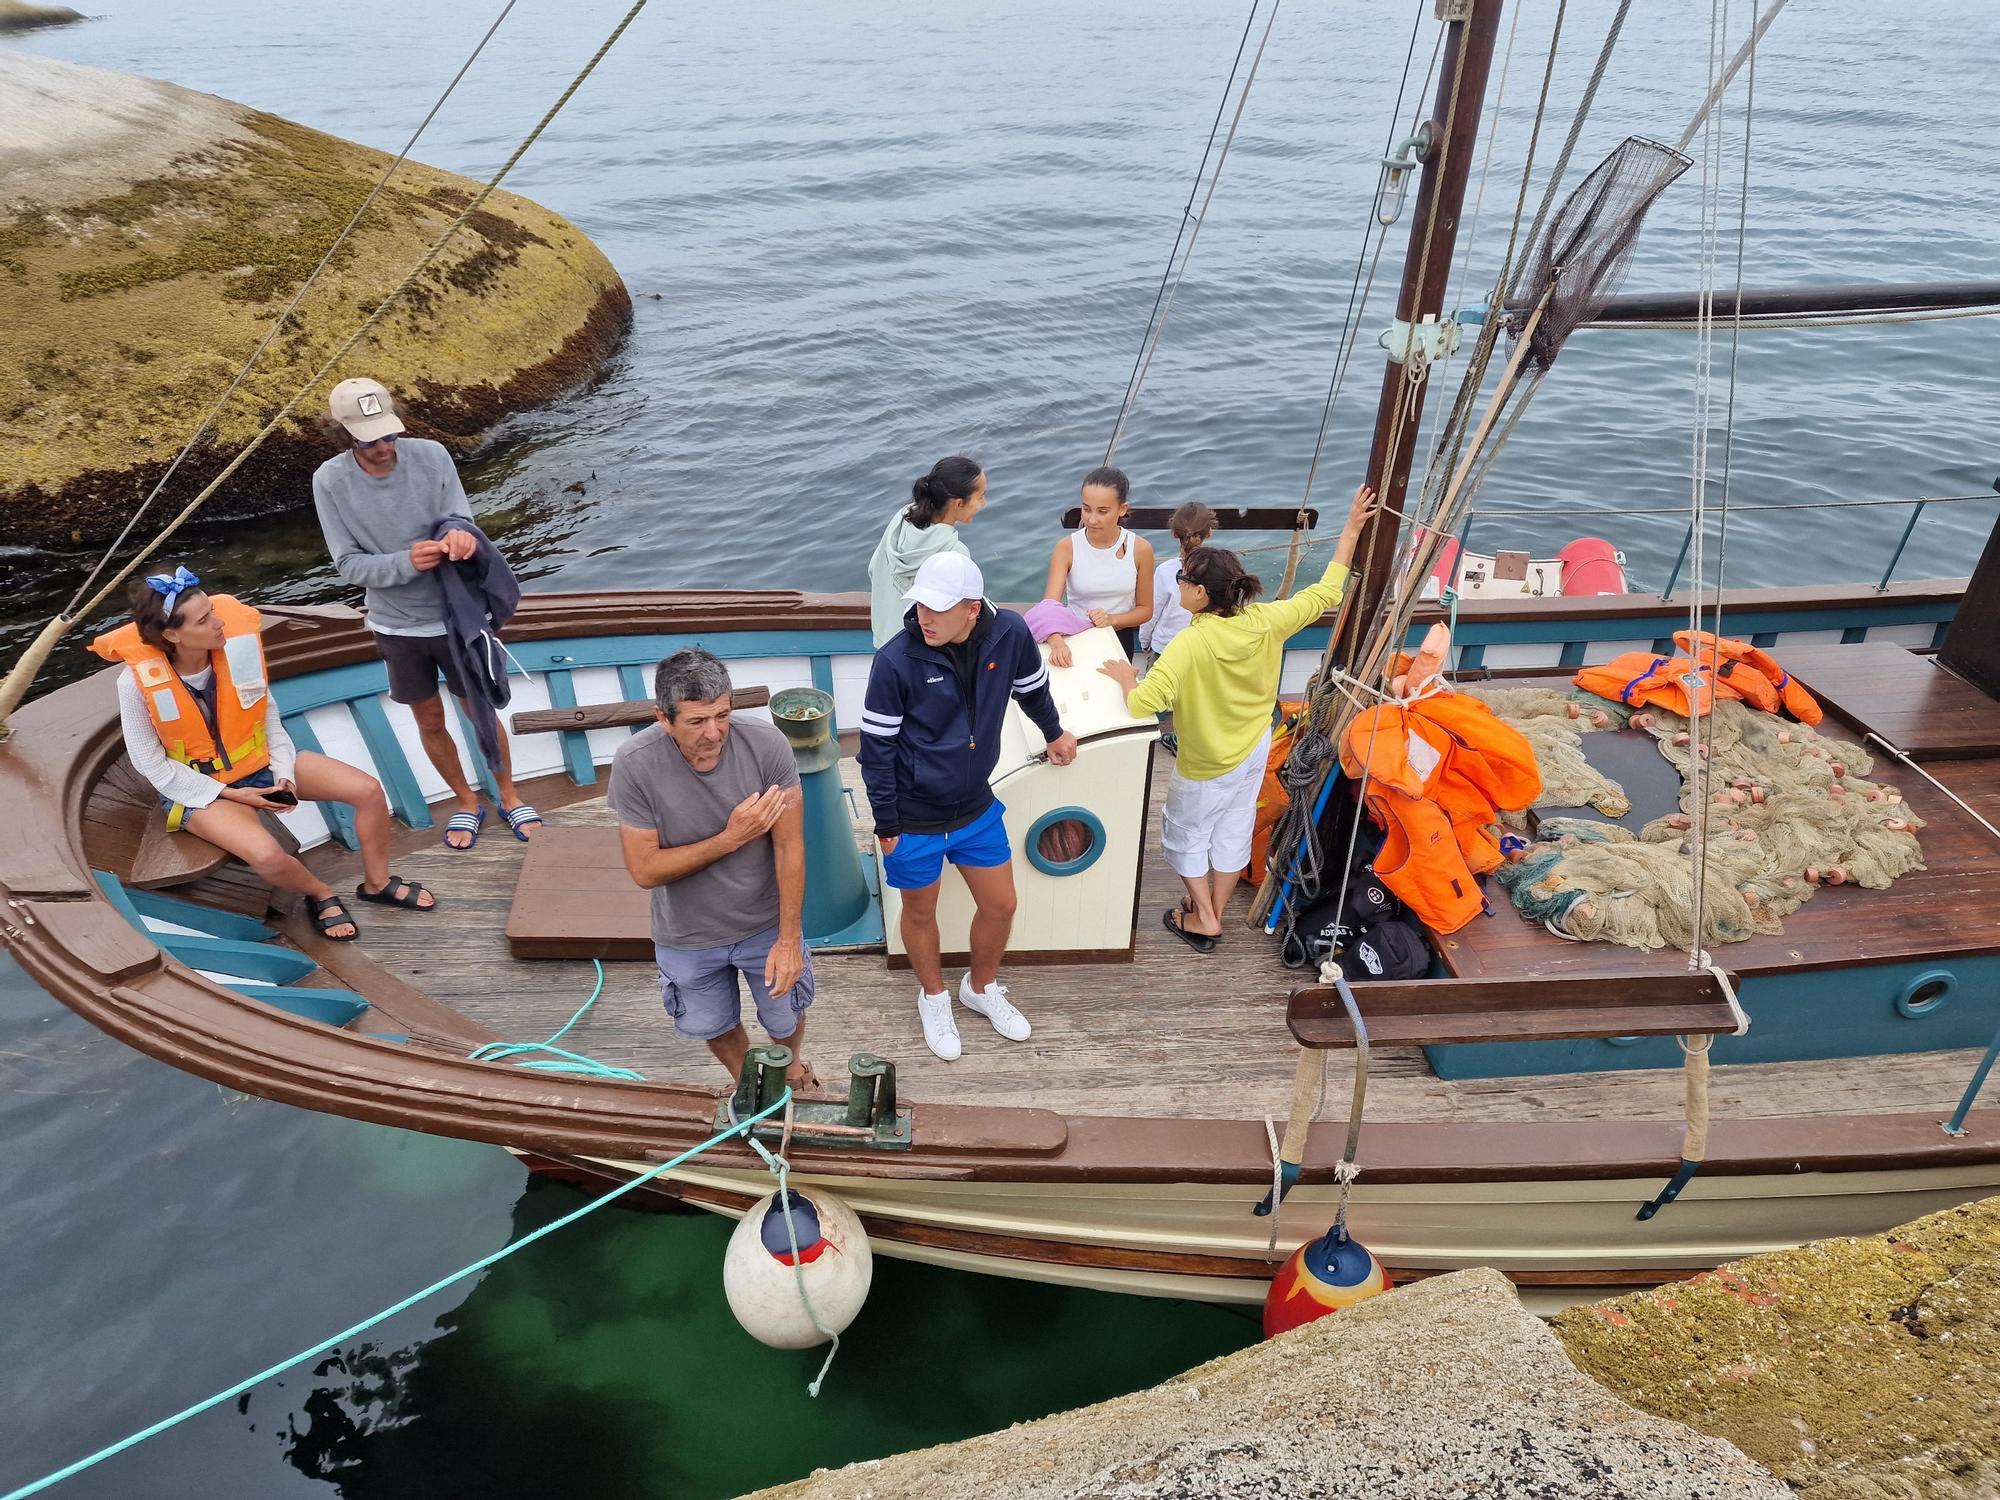 De visita en las Islas Atlánticas de Galicia a bordo del aula flotante "Chasula".